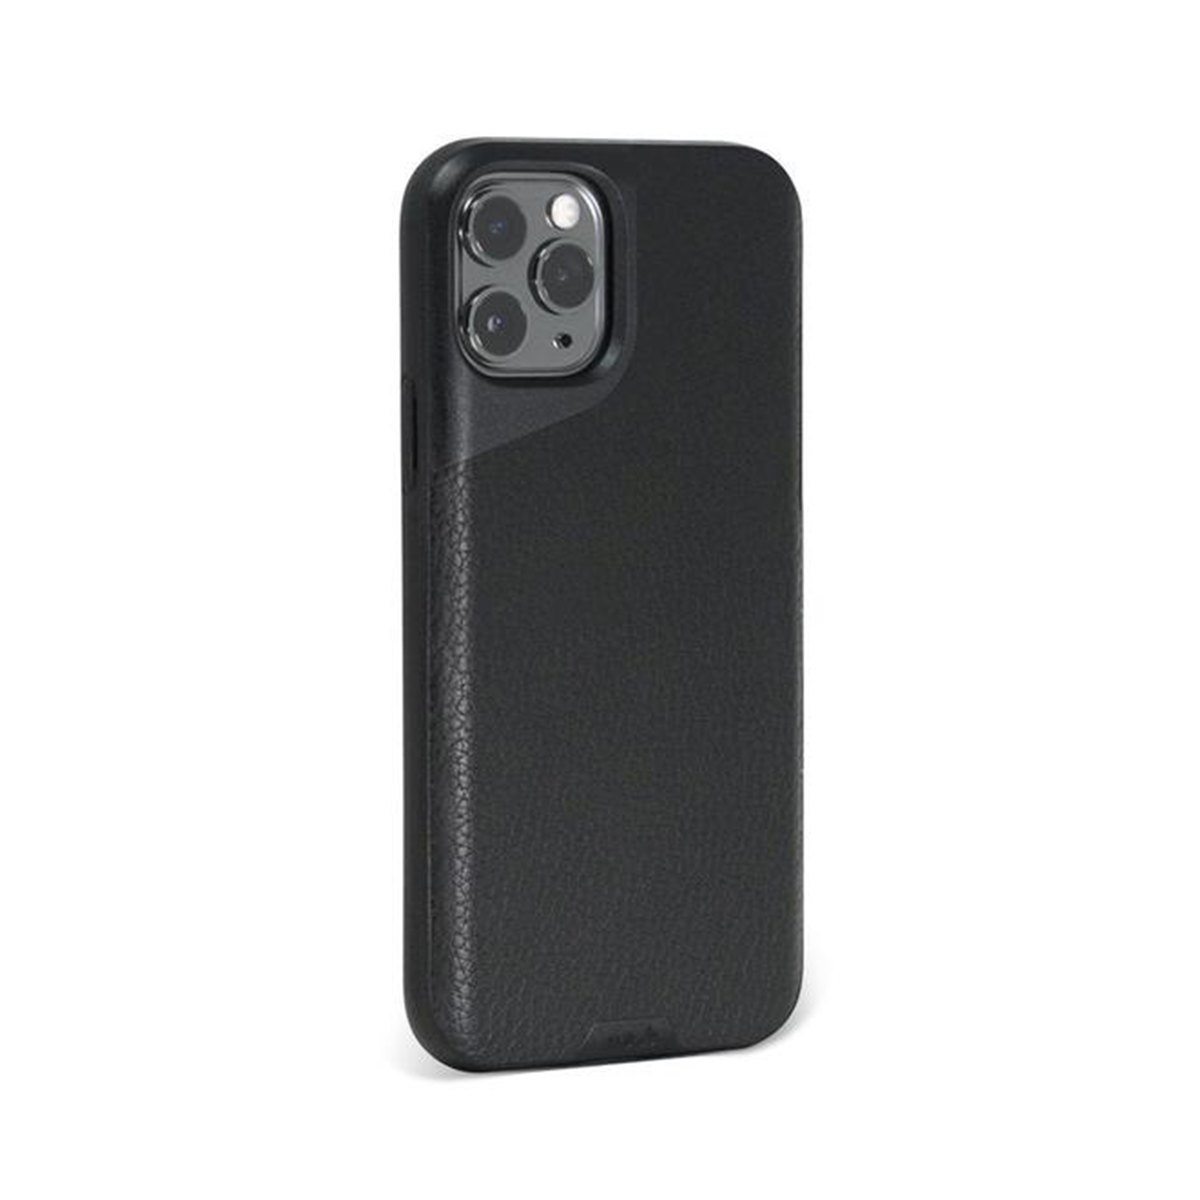 Mous - Contour Case for iPhone 11 Pro Max - Black Leather